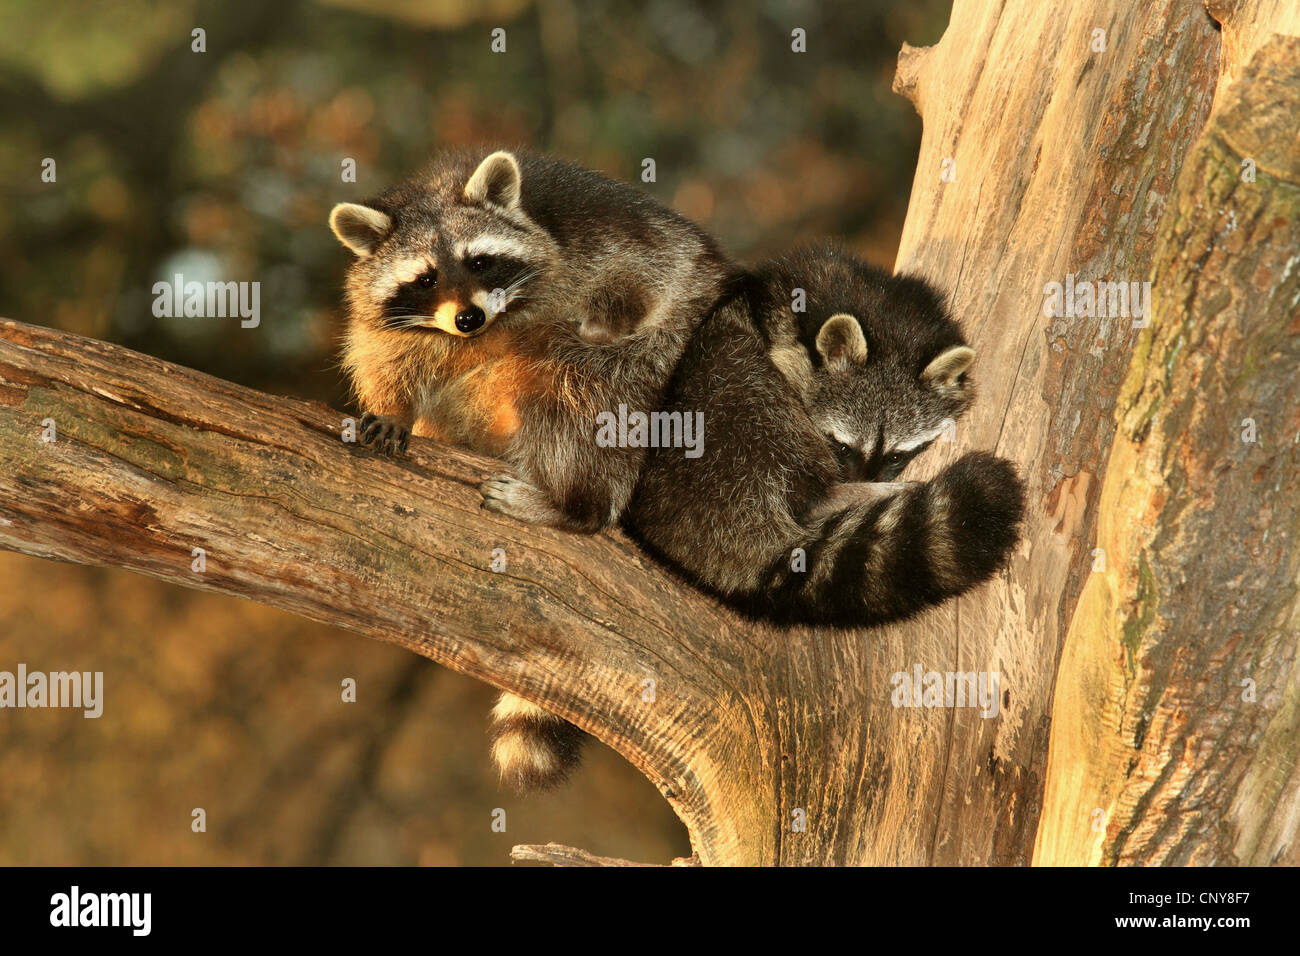 Comunes de mapache (Procyon lotor), dos mapaches sobre un árbol descansando, Alemania Foto de stock